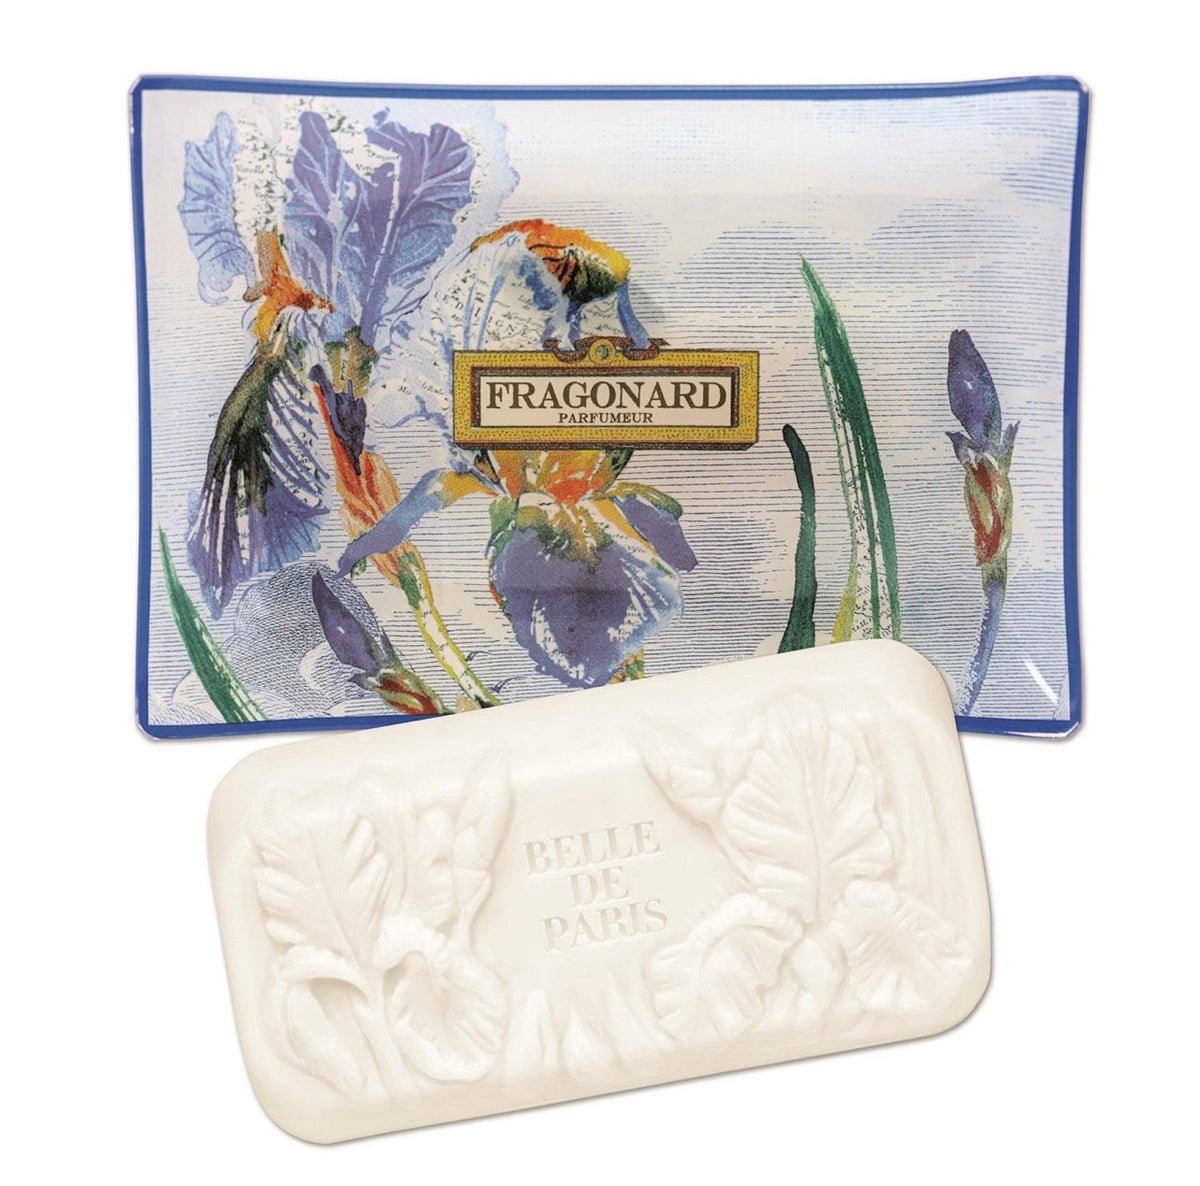 Fragonard Belle de Paris Soap and Soap Plate - Les Fleur de Parfumeur